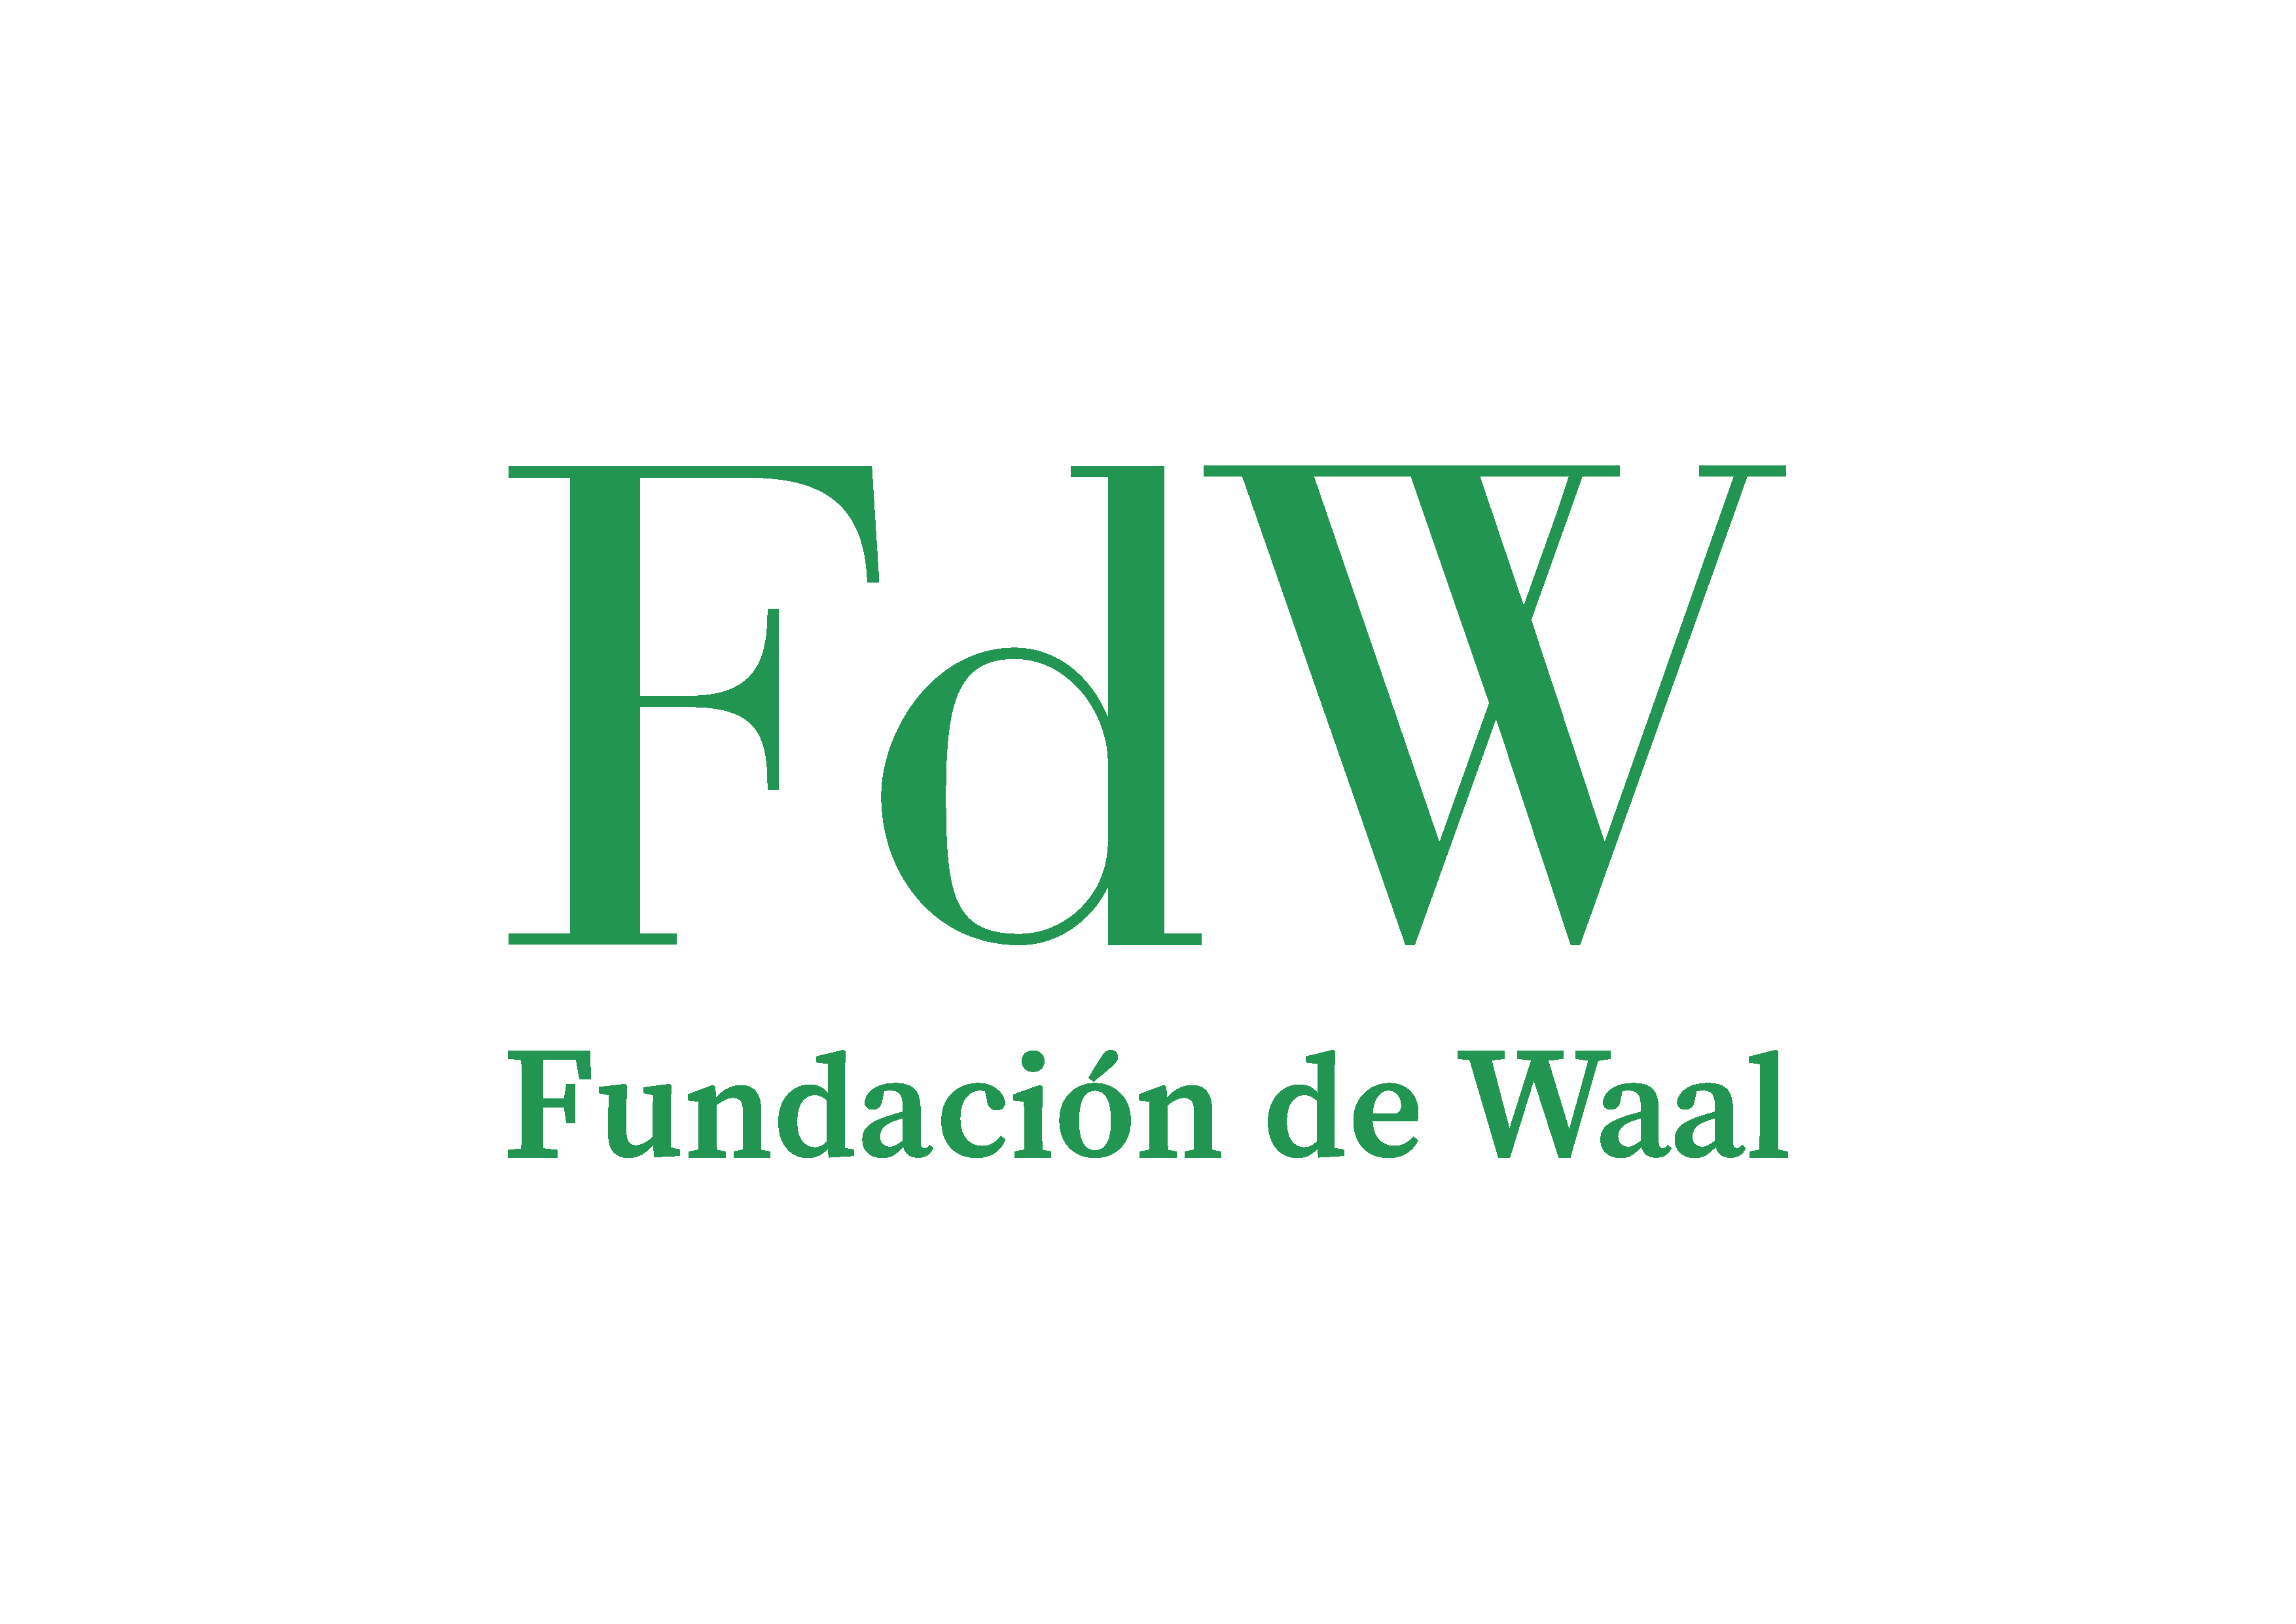 Fundación de Waal